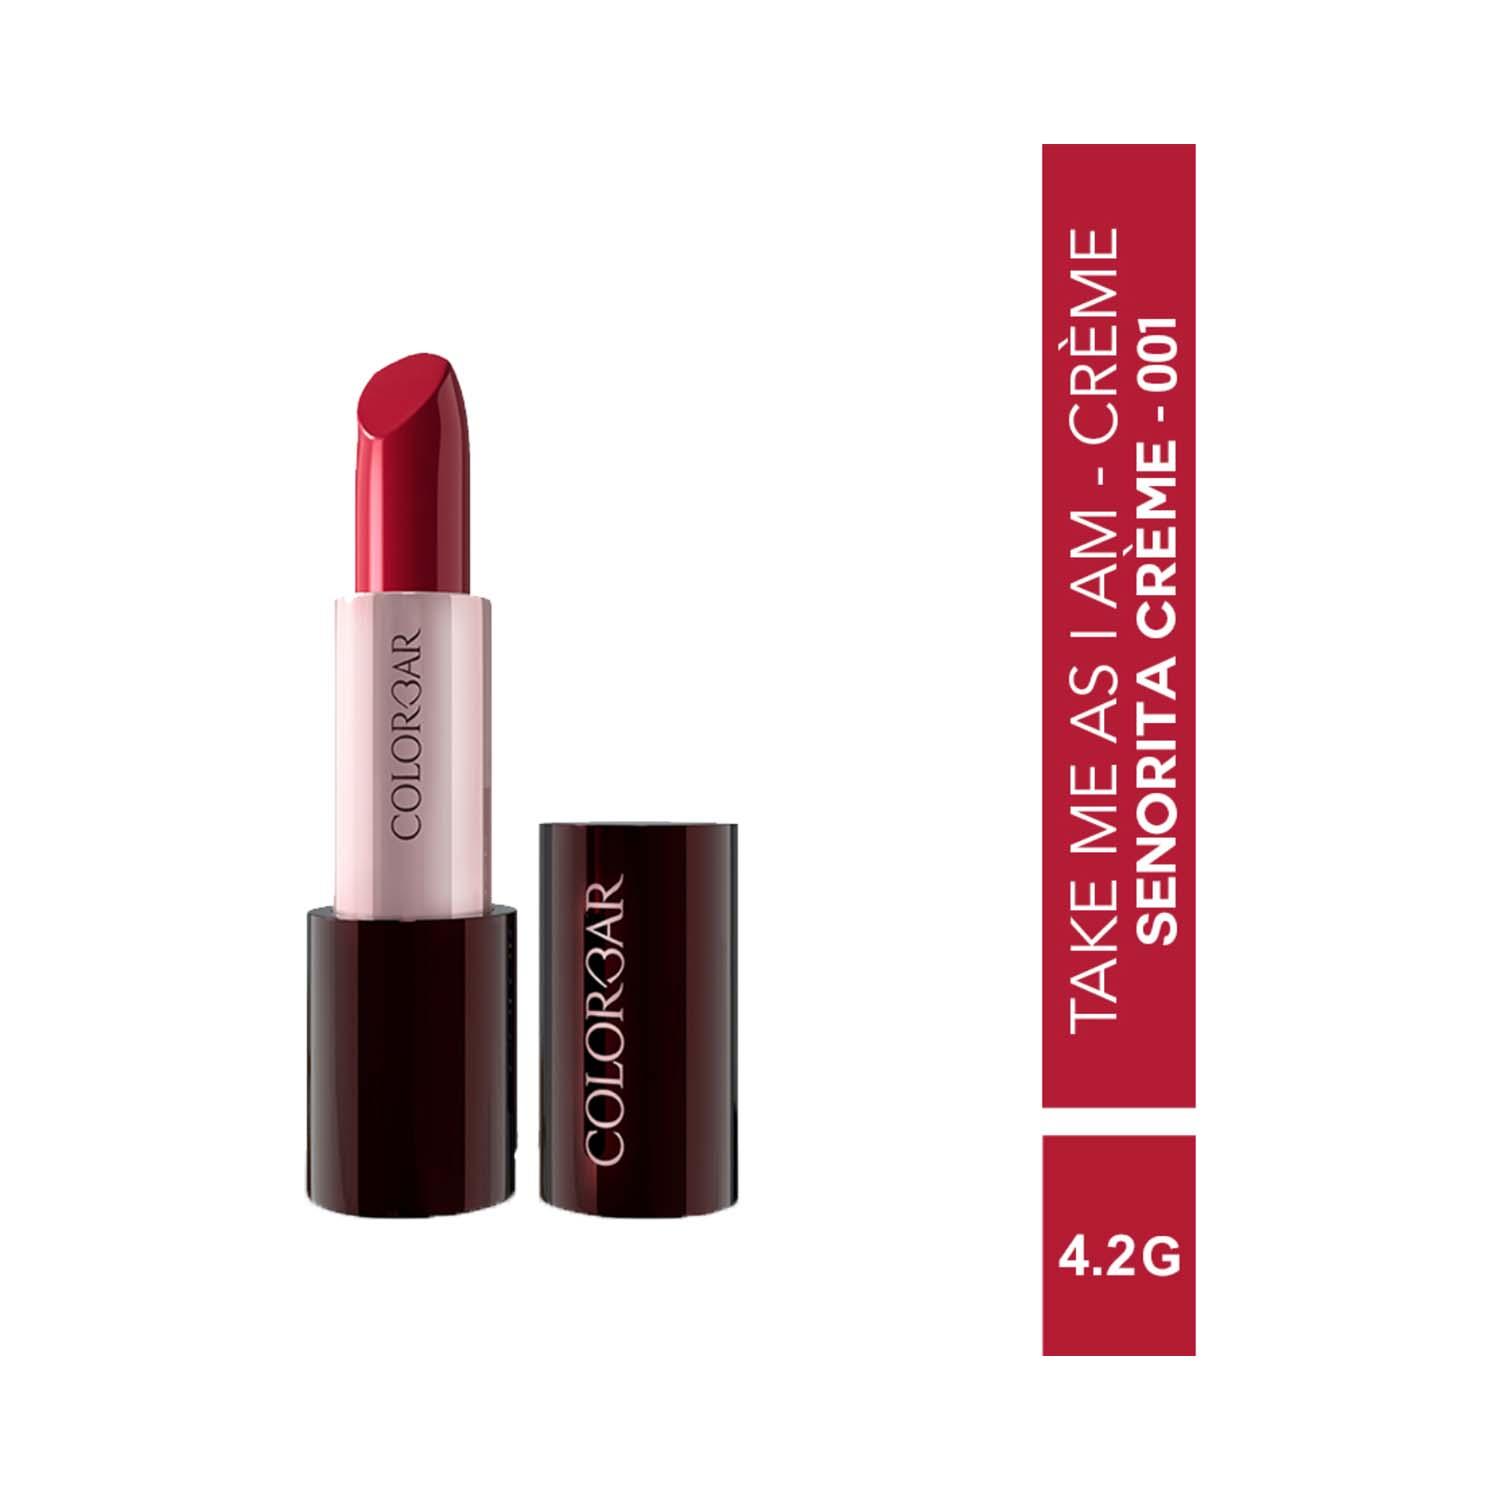 Colorbar | Colorbar Take Me As I Am Vegan Creme Lipstick - Senorita Creme - [001] (4.2 g)